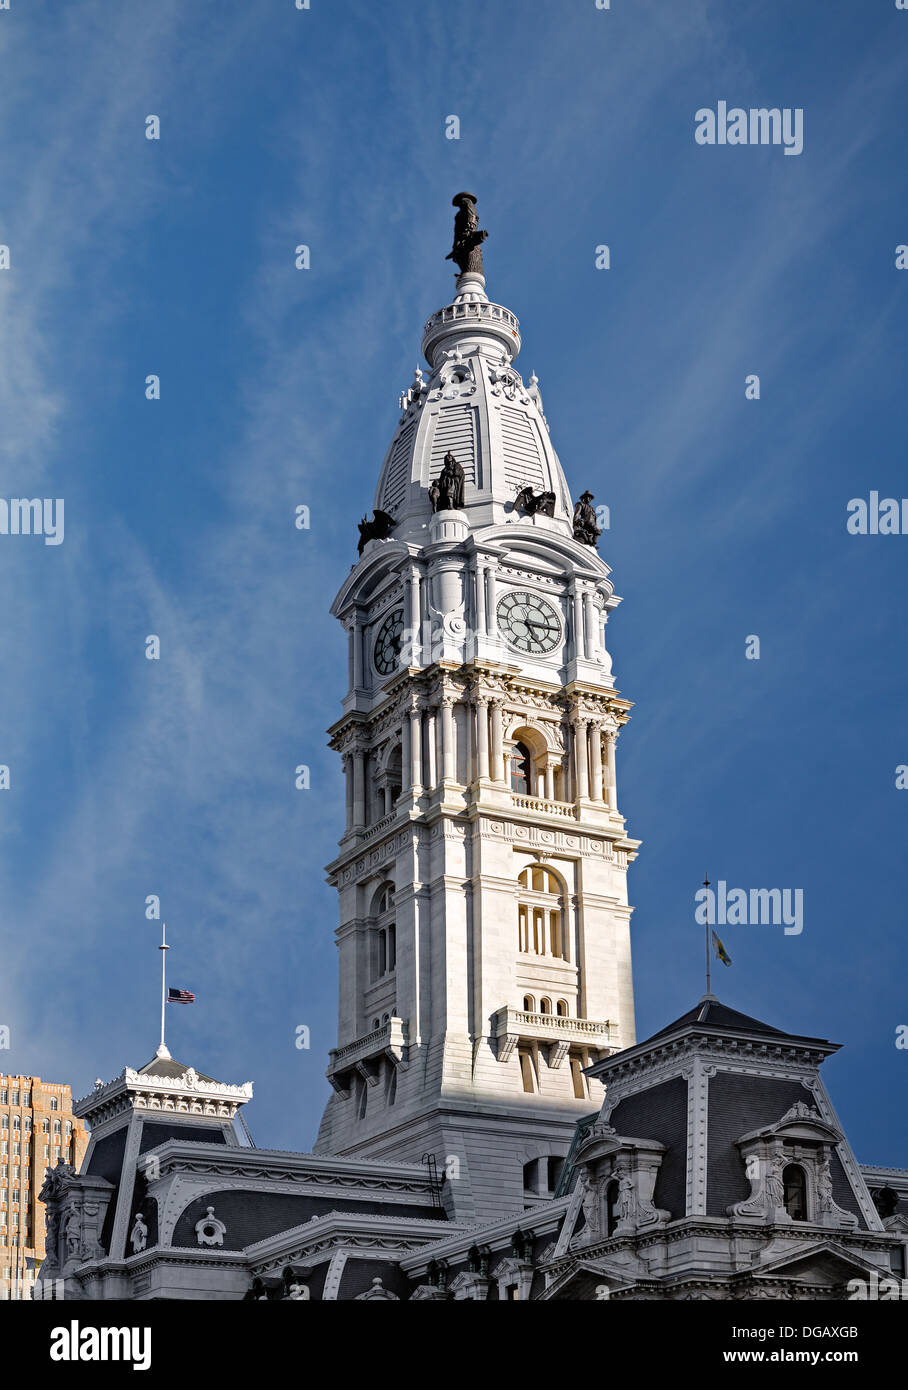 L'Hôtel de ville de Philadelphie les détails architecturaux qui comprend la tour de l'horloge et la statue de William Penn qui Banque D'Images